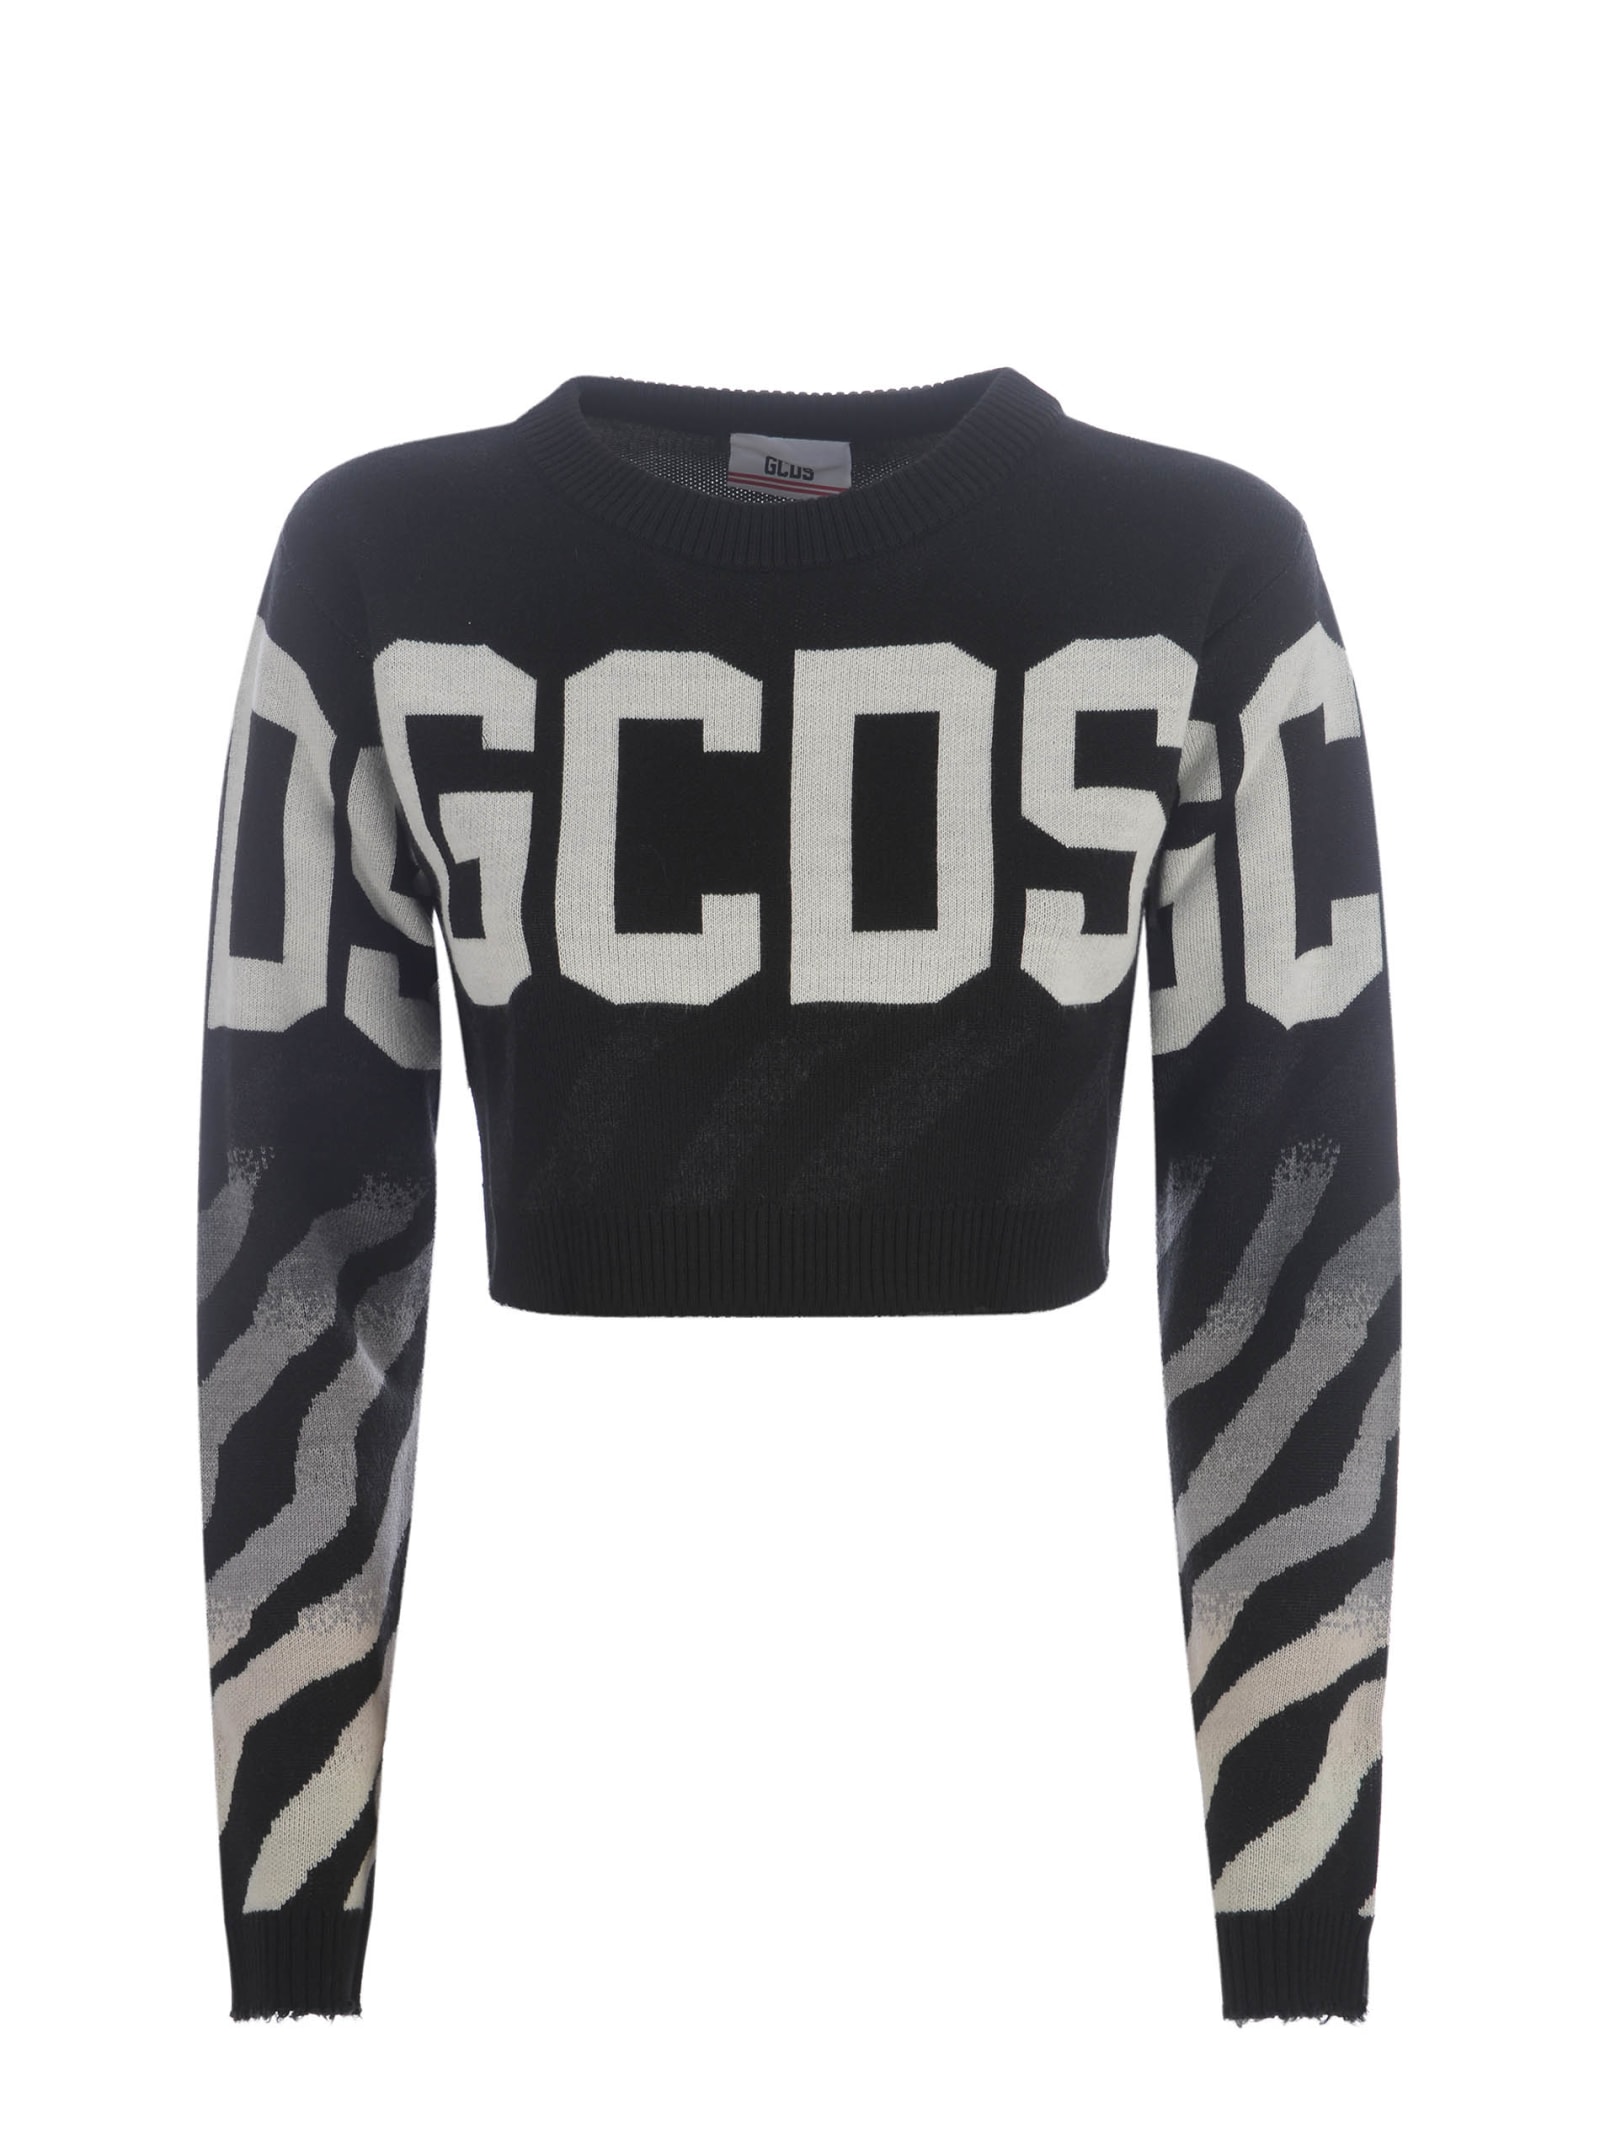 Sweater Cropped Gcds zebra In Wool Blend